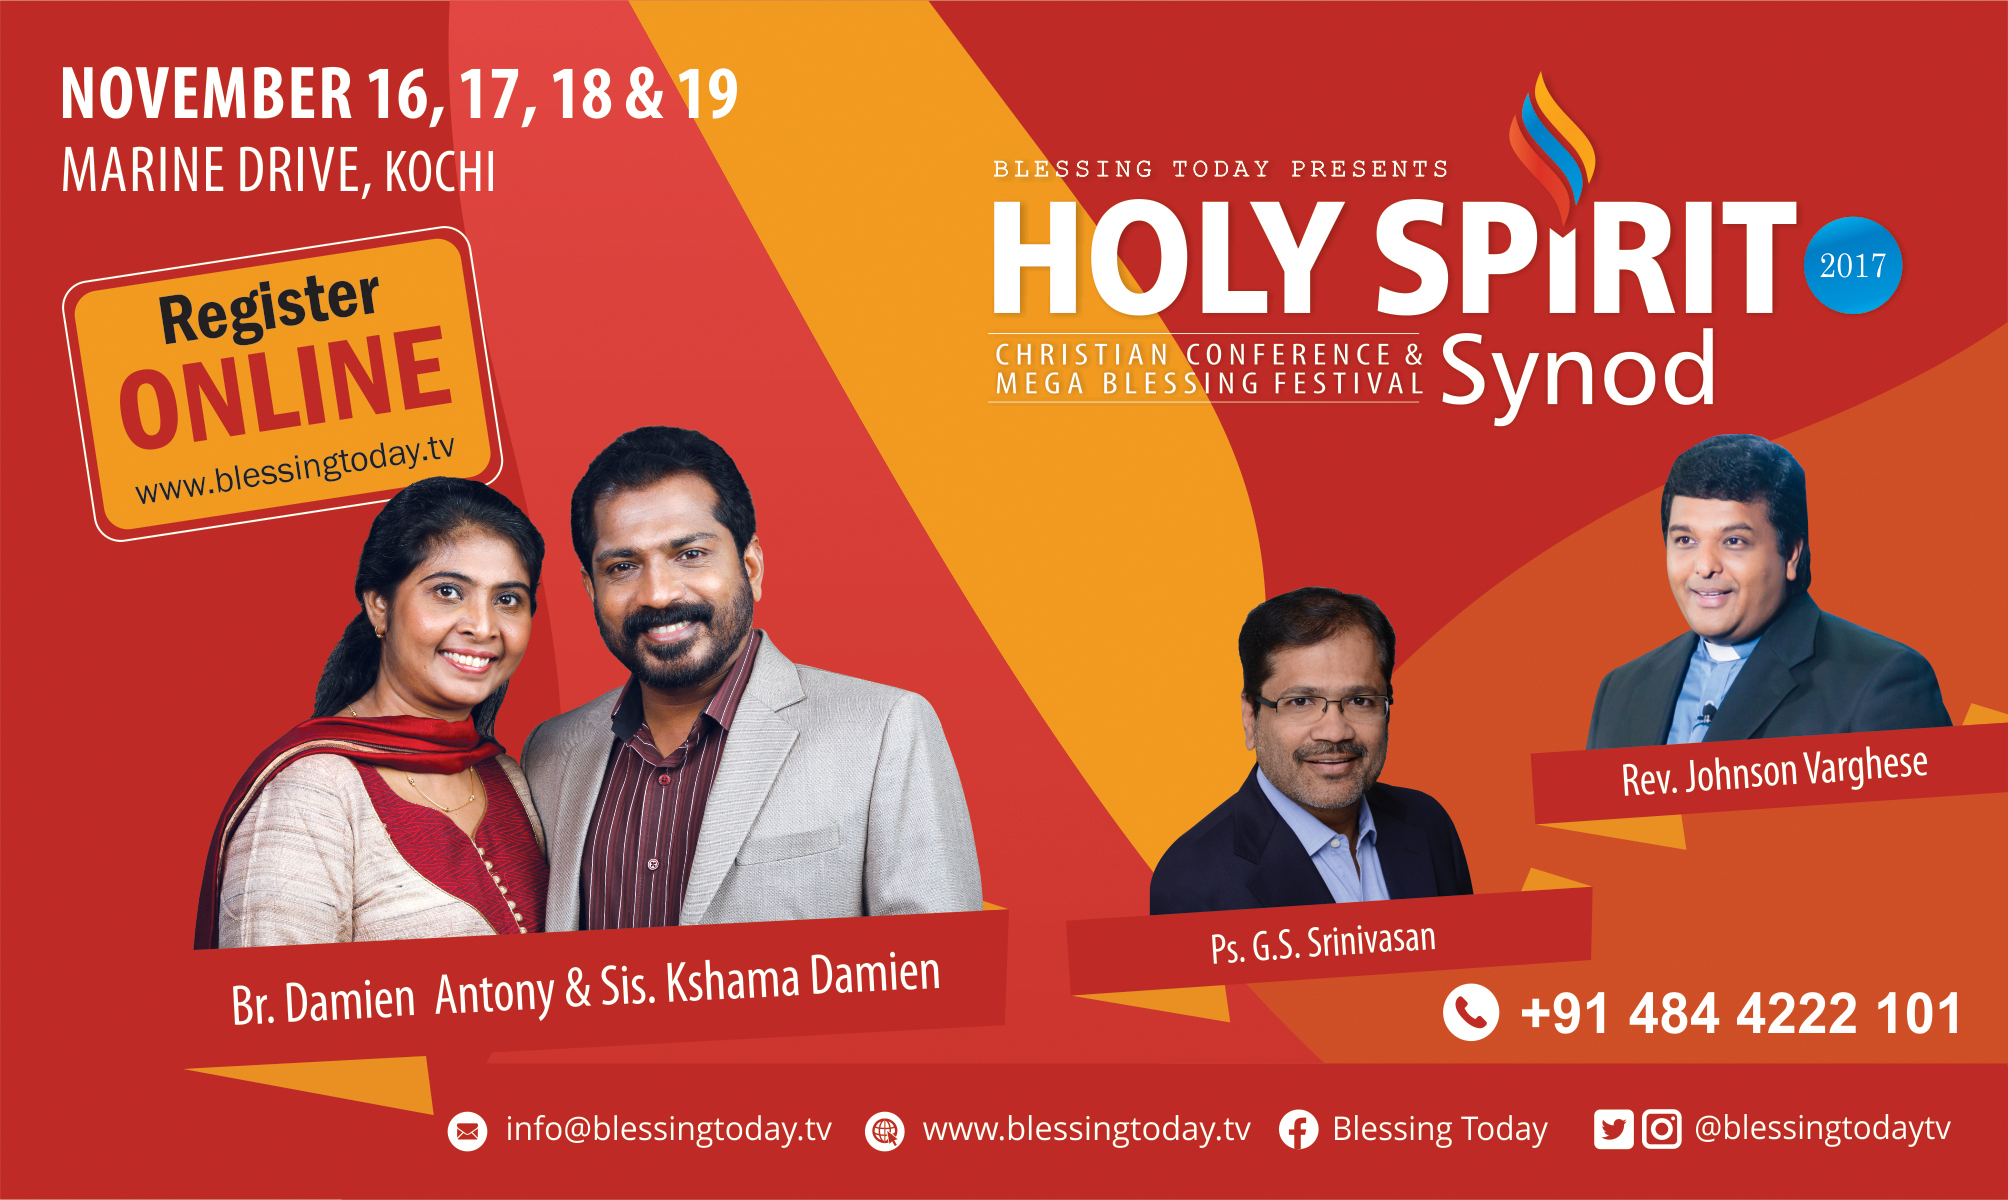 Holy Spirit Synod 2017